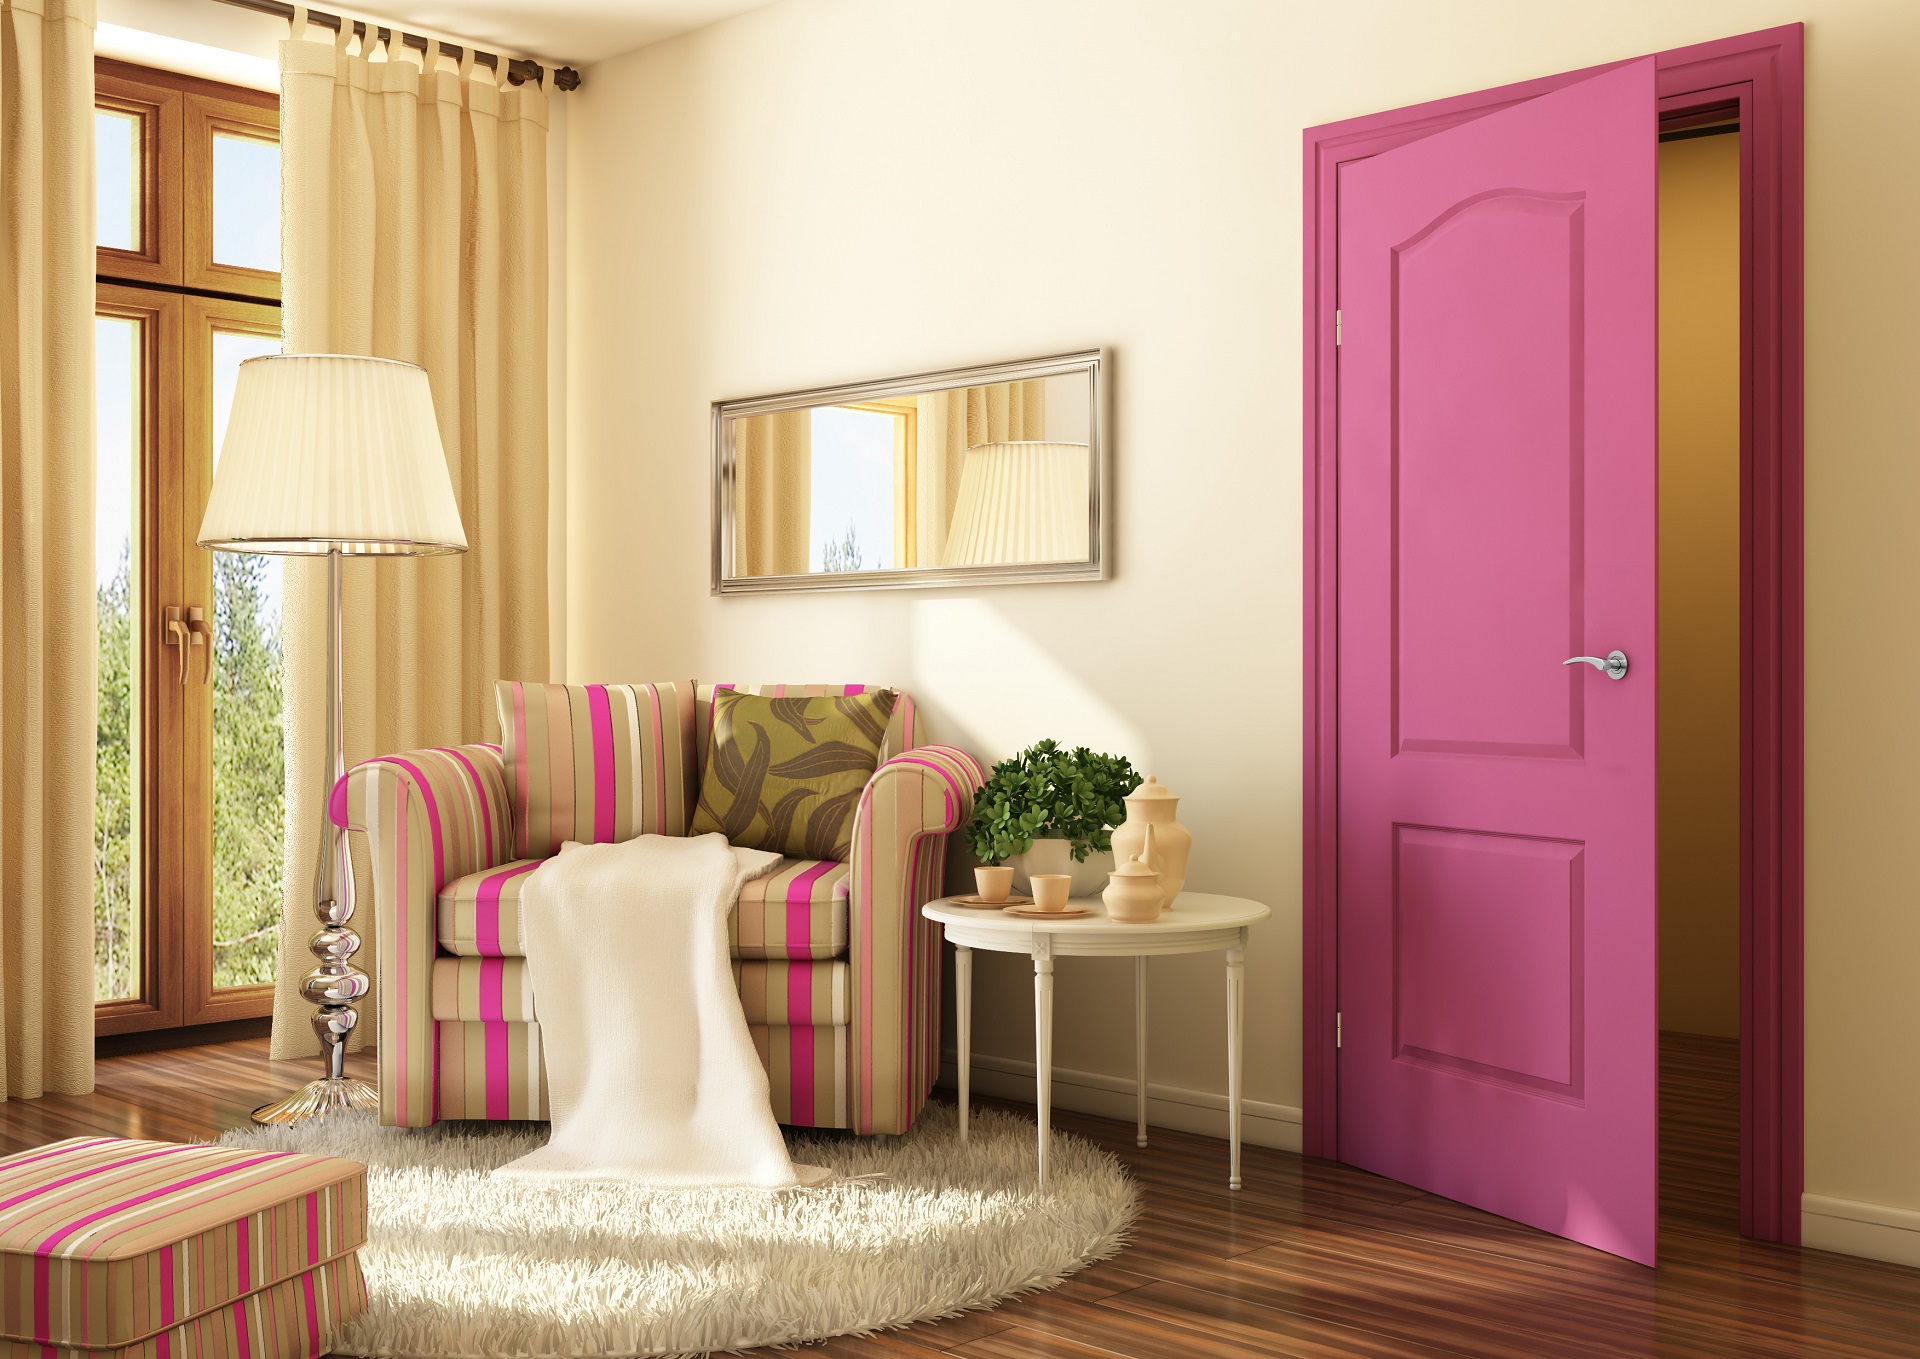 Красивые двери в квартире. Двери в интерьере. DMTHB В интере. Вьери в Интрер. Цветные межкомнатные двери в интерьере.